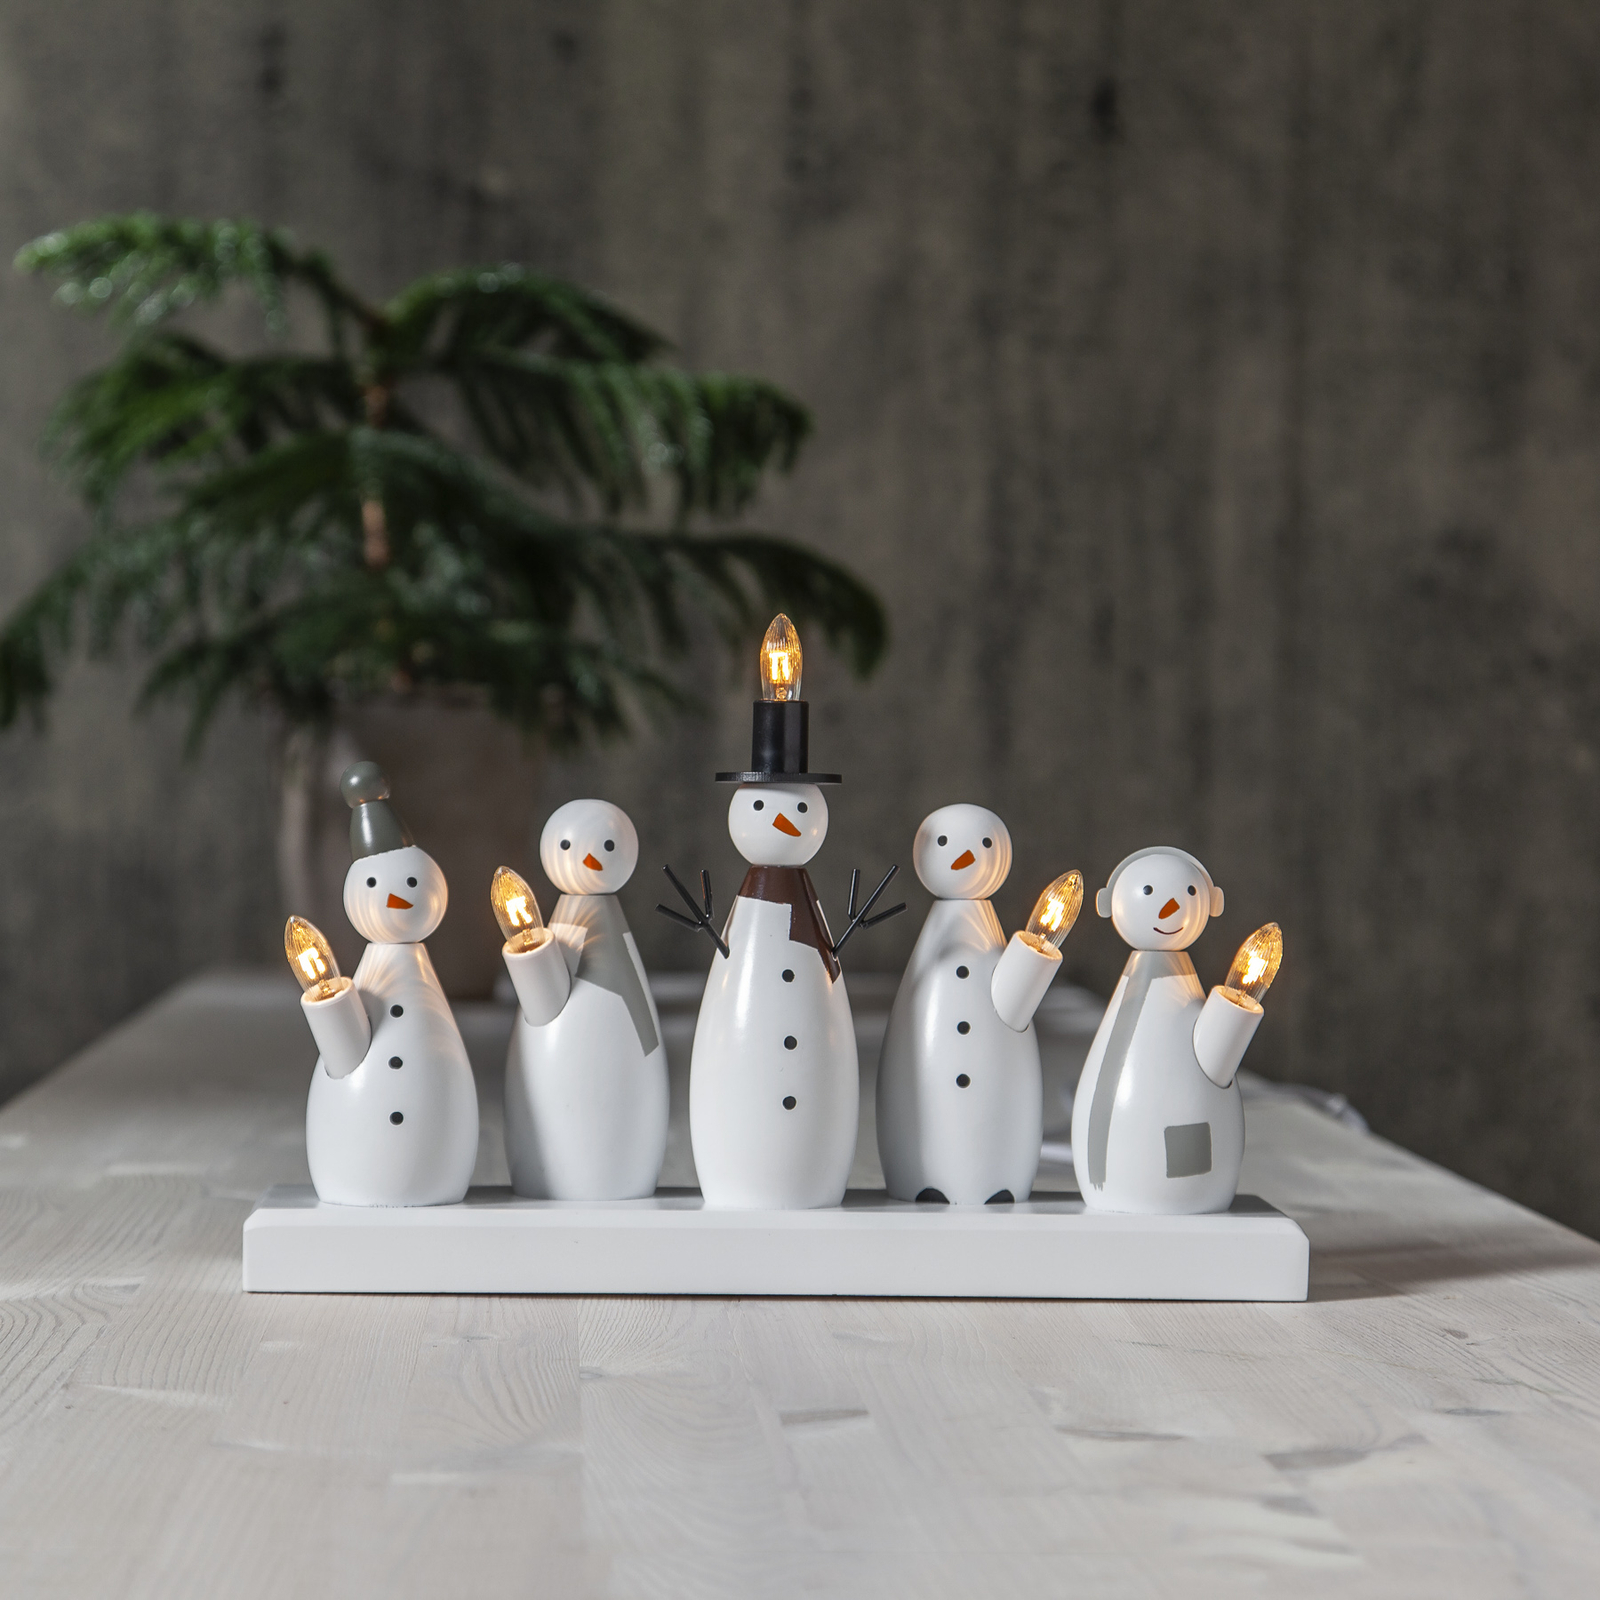 Kandelaar Snowman, 5-lamps